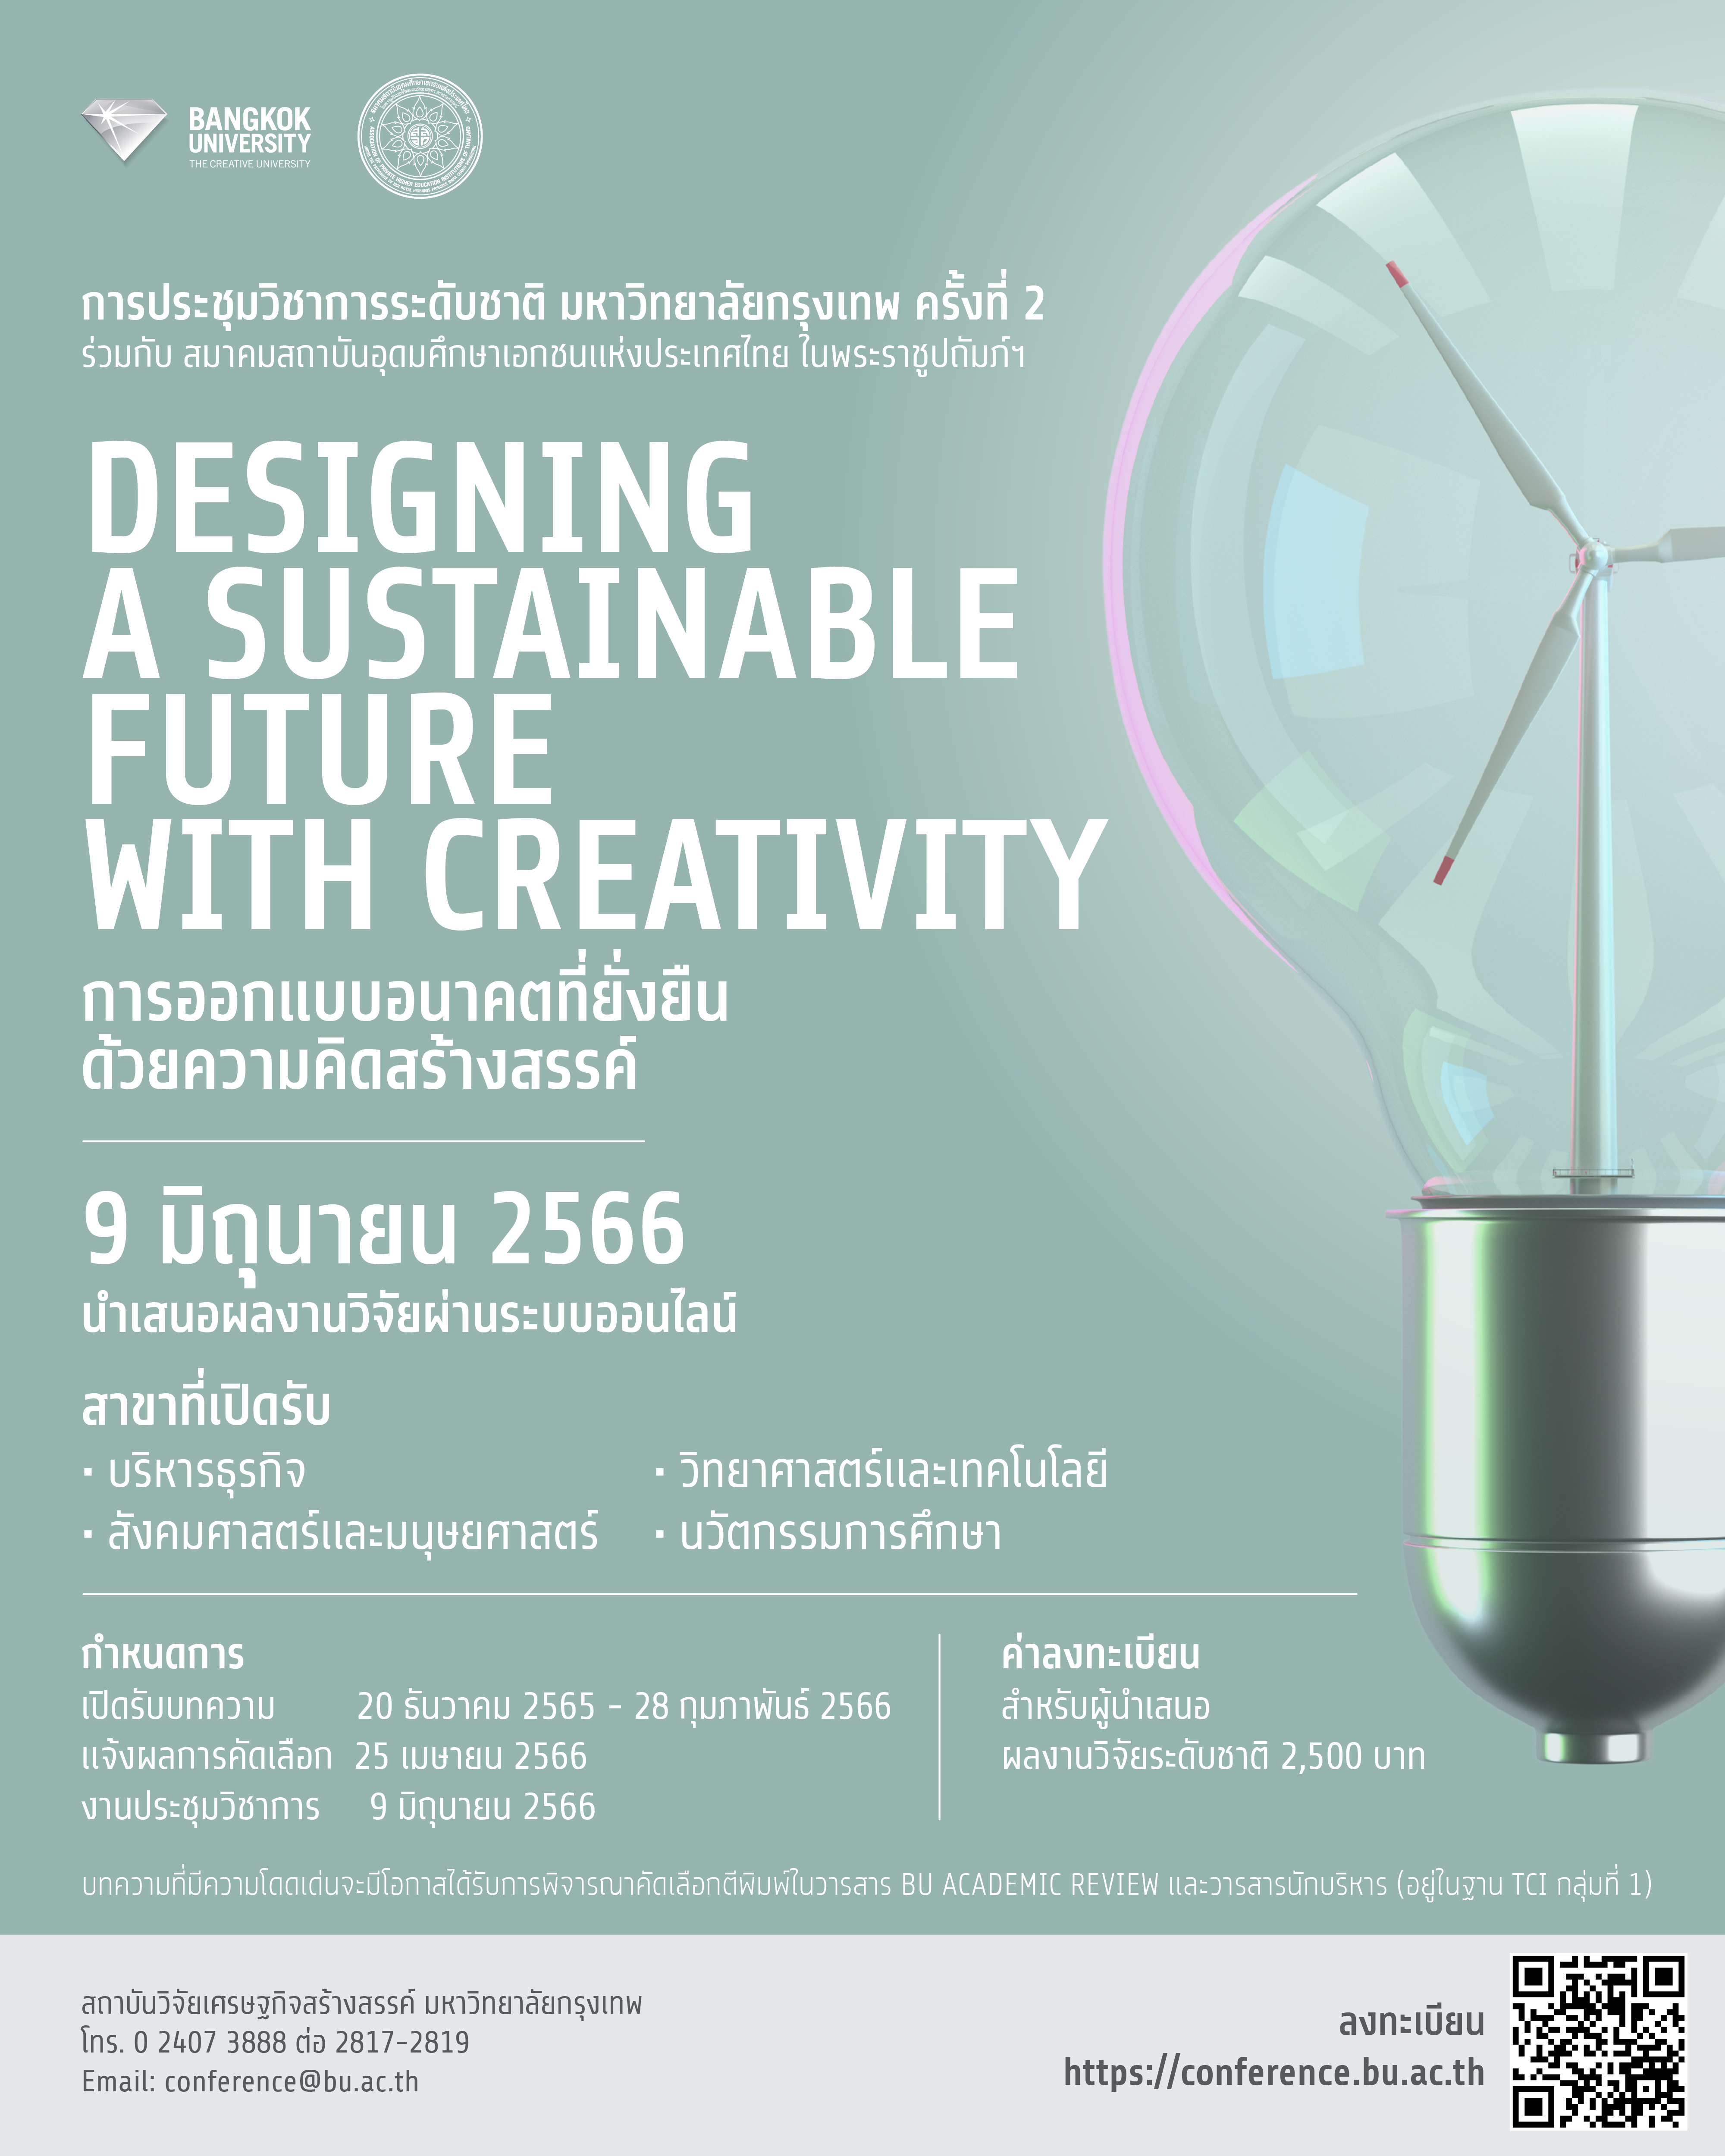 ม.กรุงเทพ การประชุมวิชาการระดับชาติ ครั้งที่ 2 "Designing a Sustainable Future with Creativity" การออกแบบอนาคตที่ยั่งยืนด้วยความคิดสร้างสรรค์